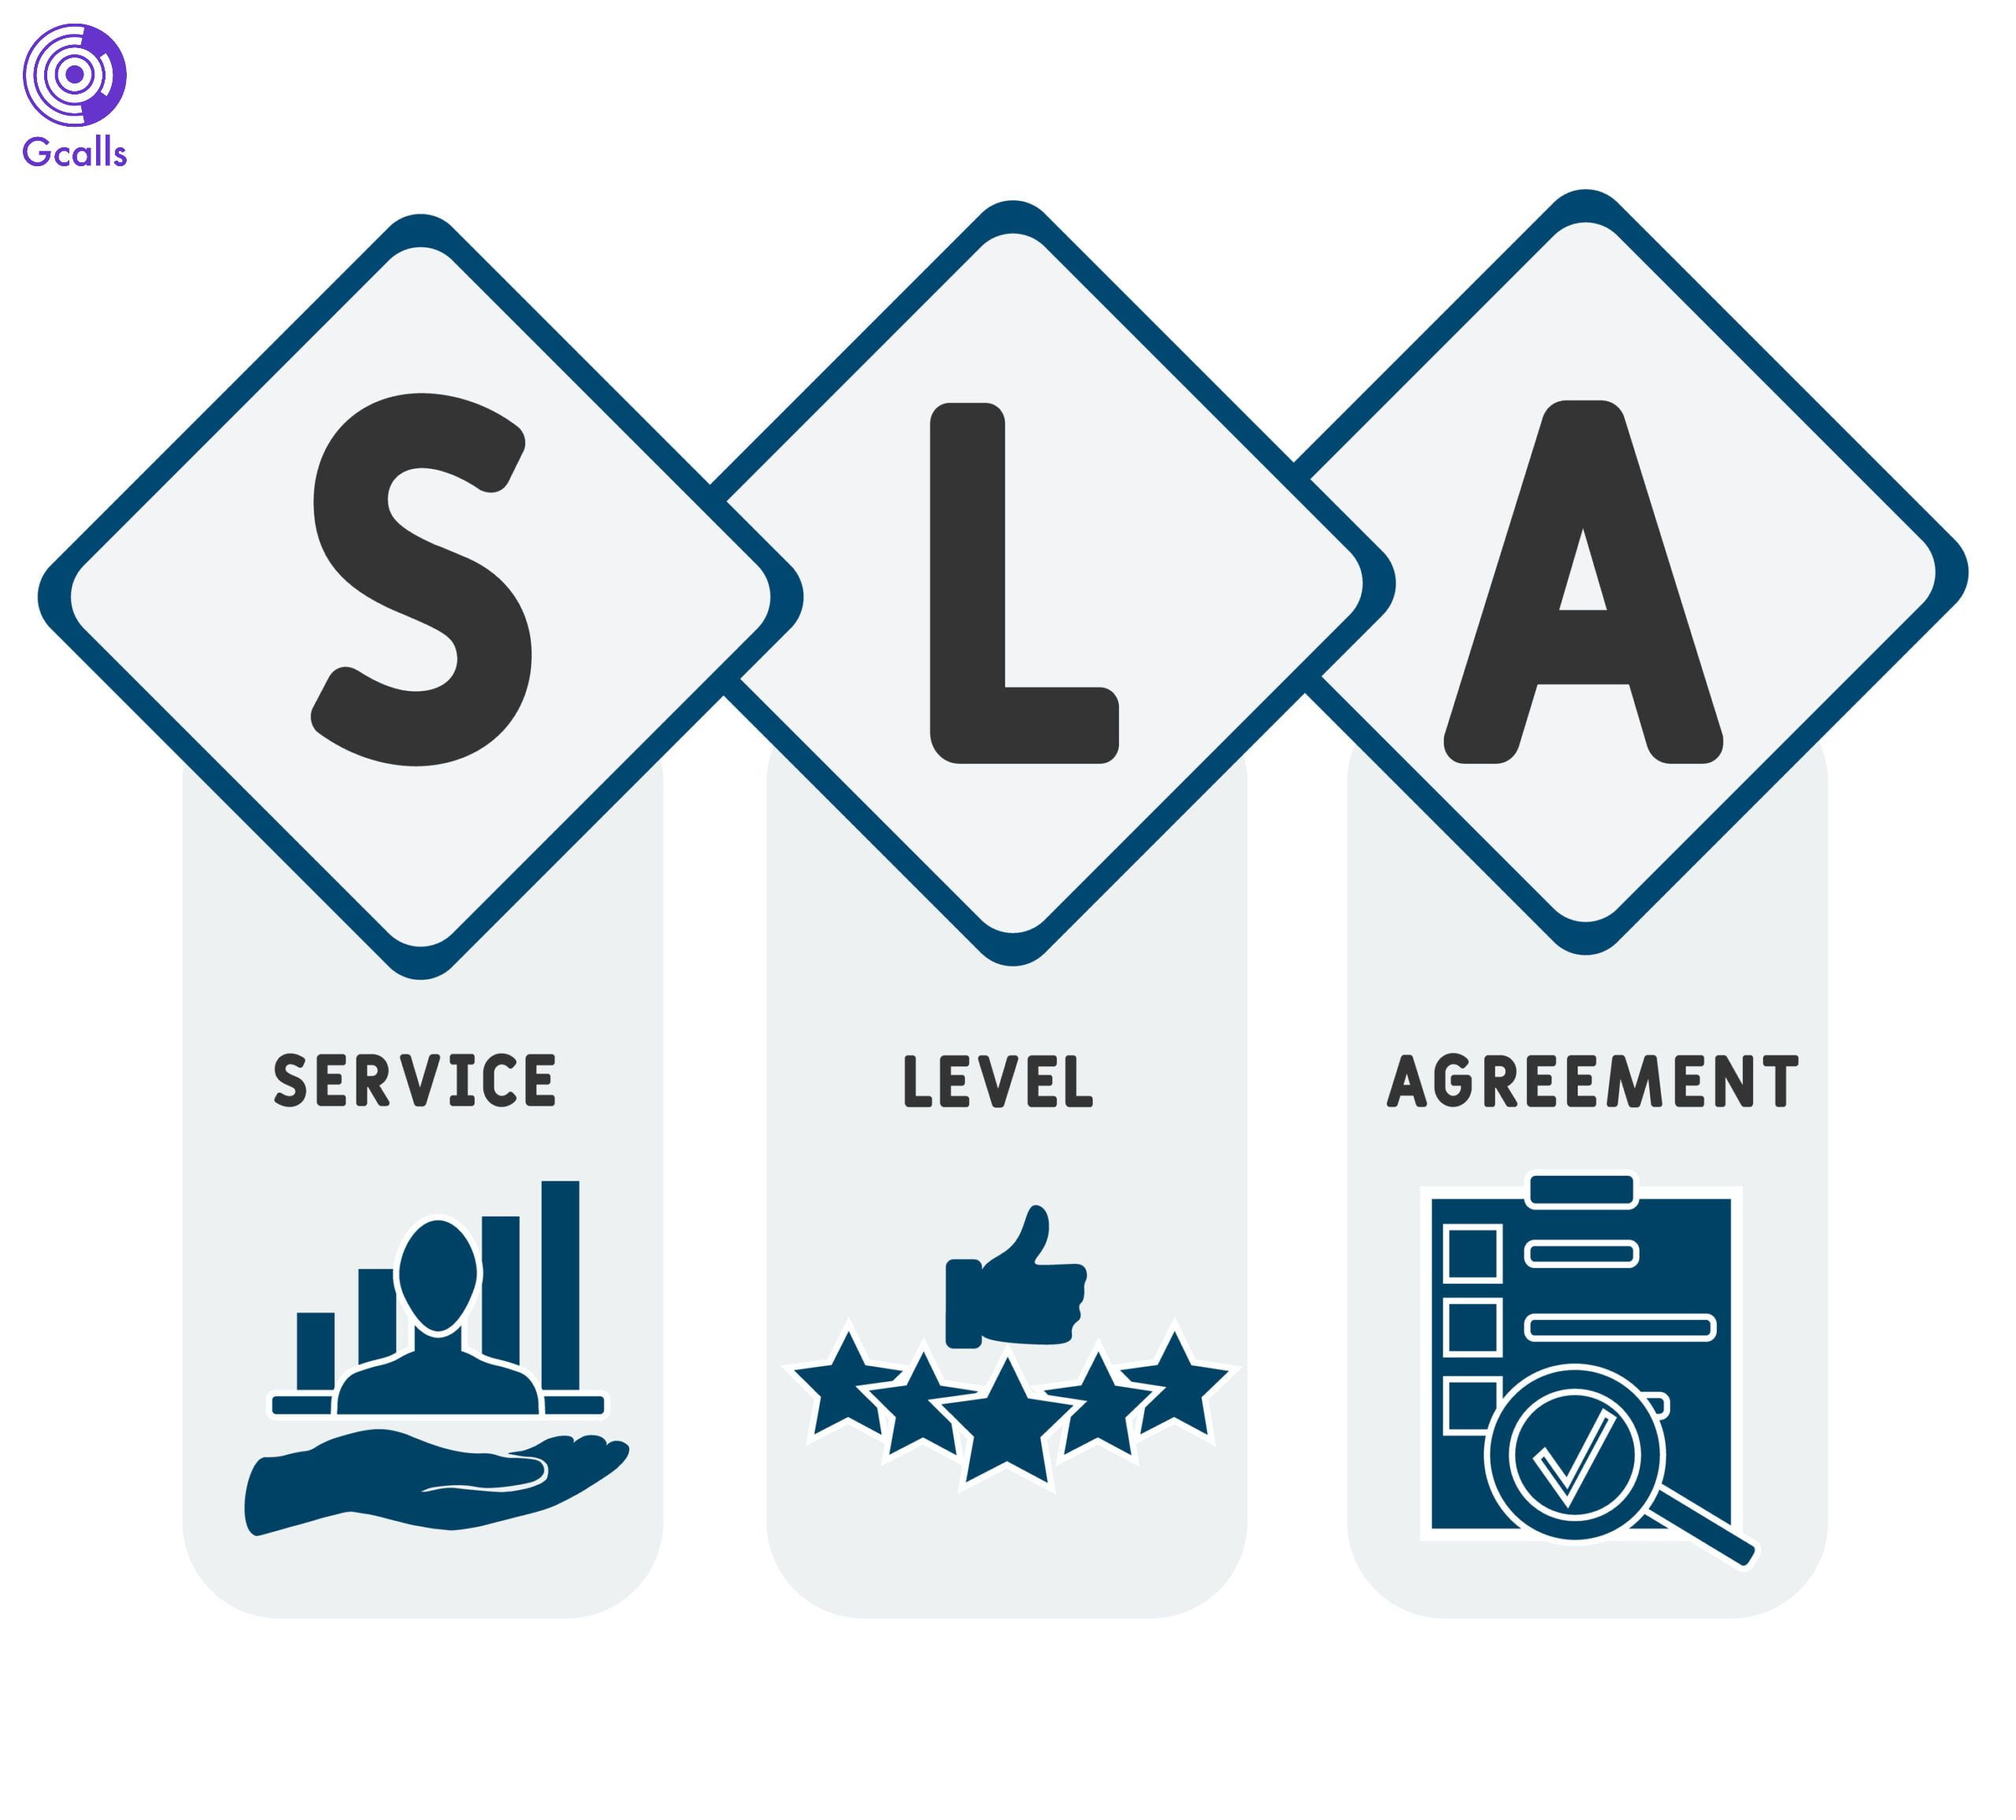 SLA là một phần không thể thiếu trong hợp đồng cung cấp công nghệ thông tin